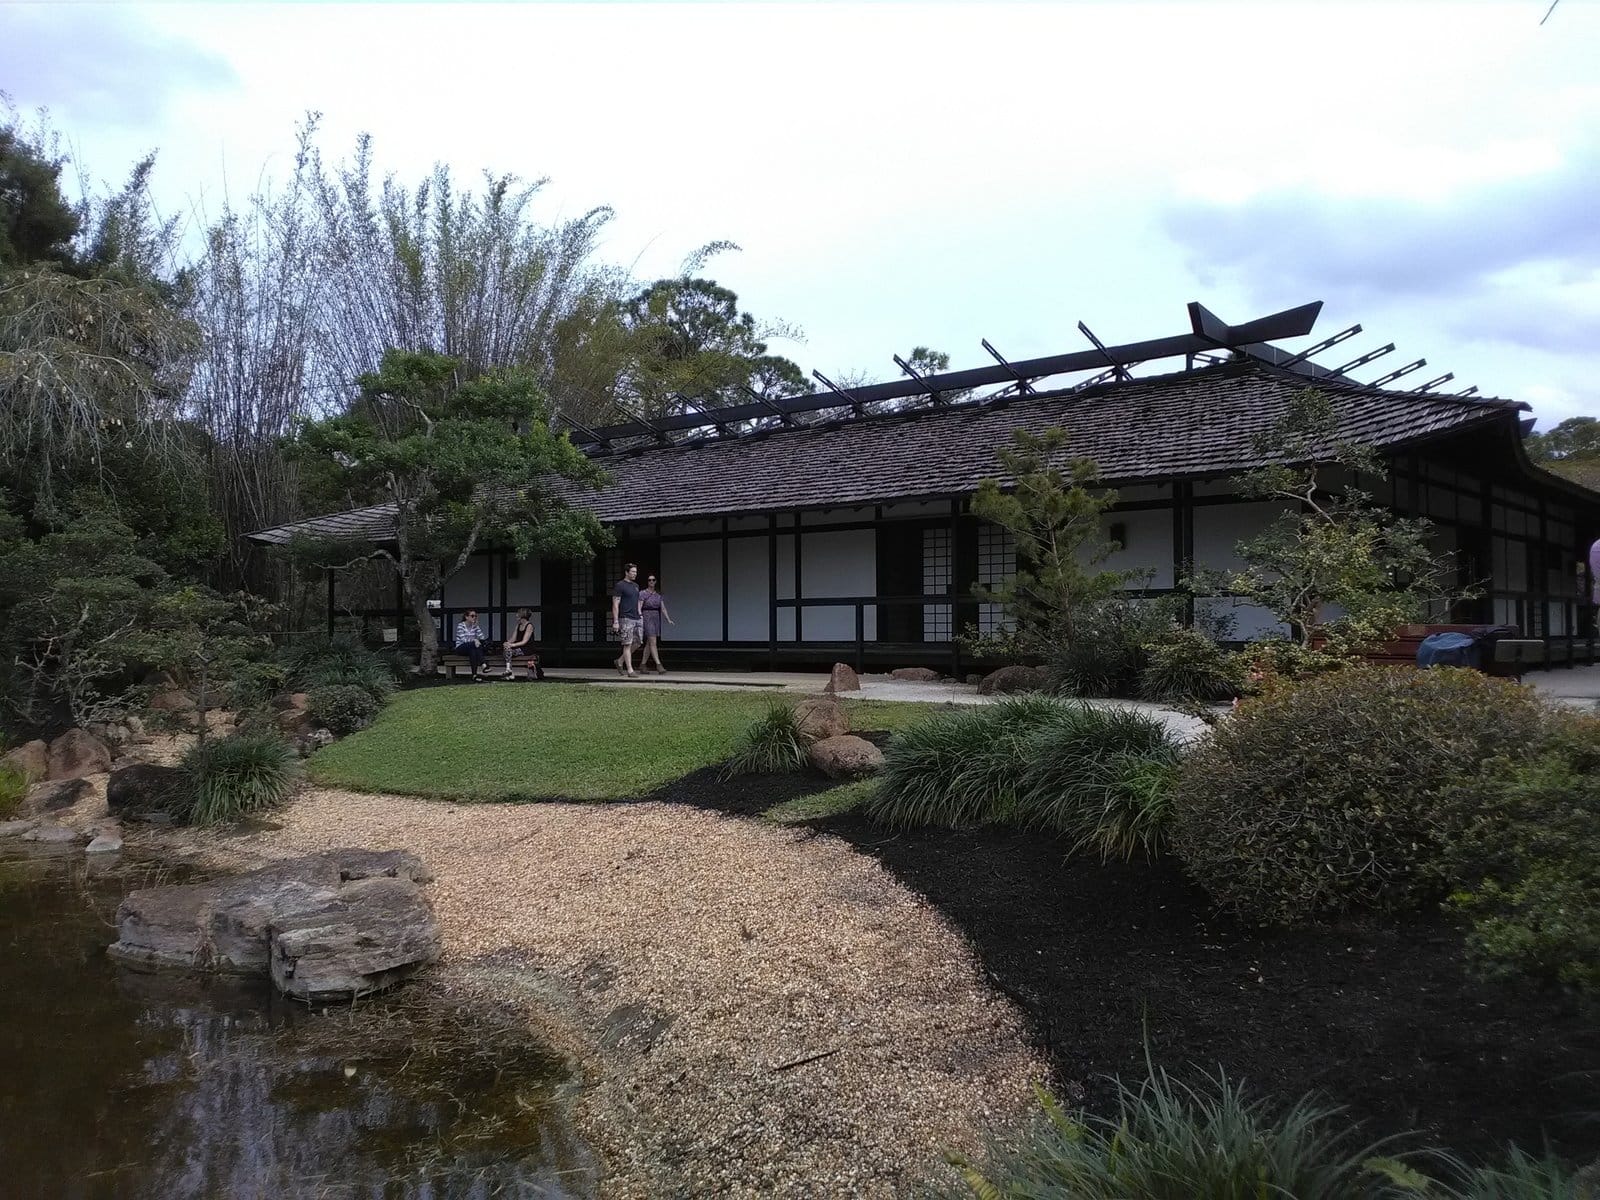 The Morikami Museum